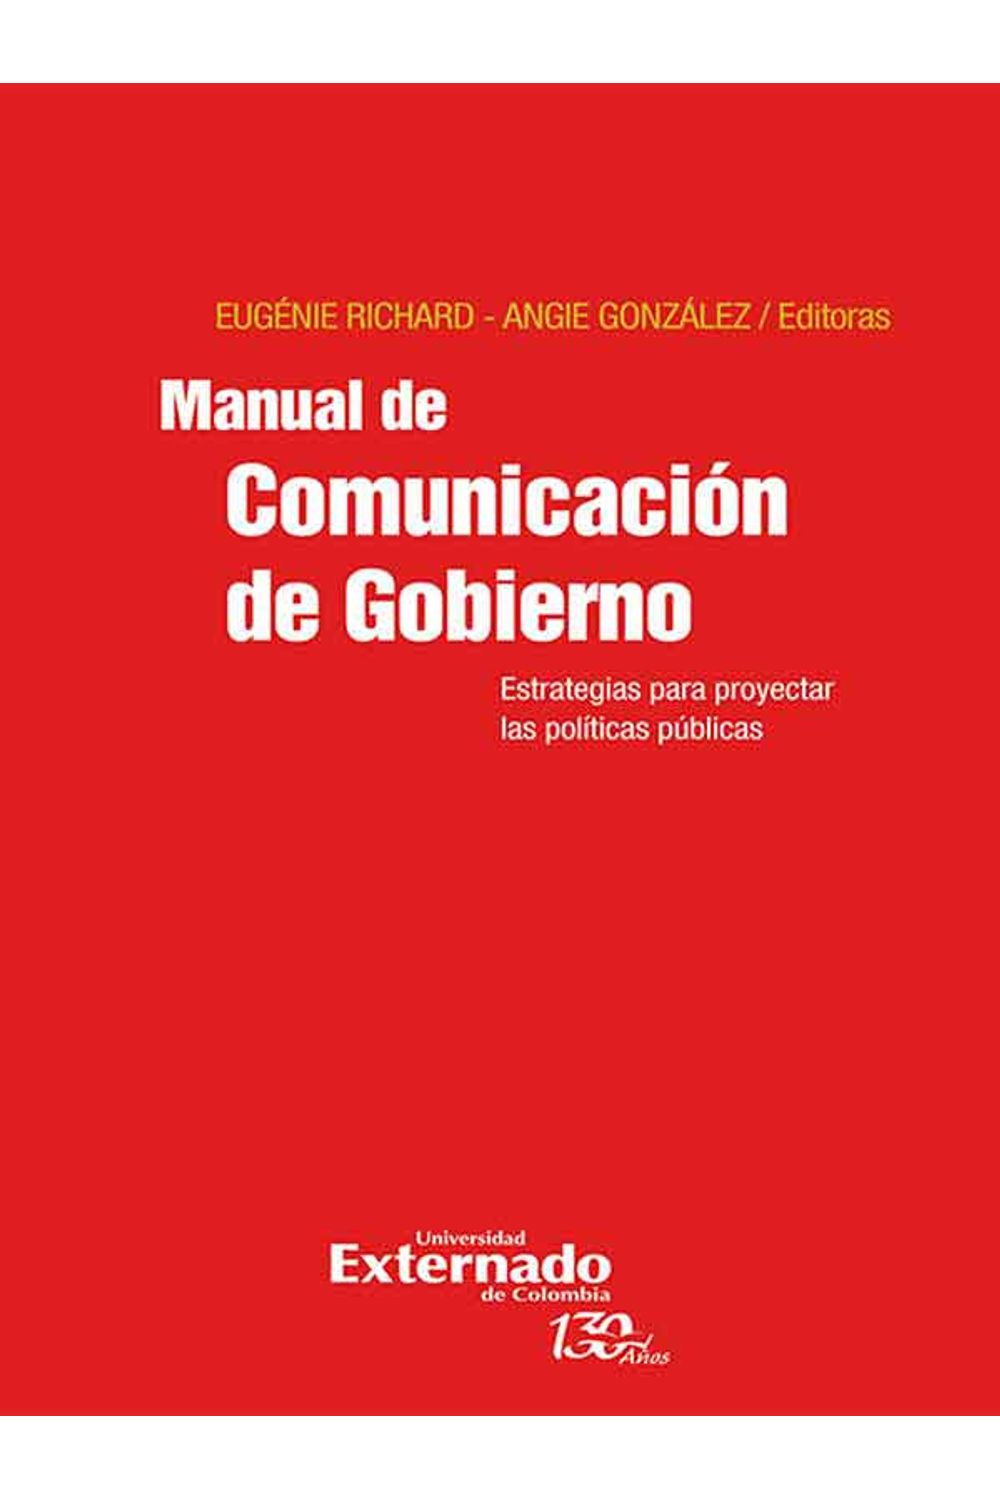 bw-manual-de-comunicacioacuten-de-gobierno-u-externado-de-colombia-9789587726053